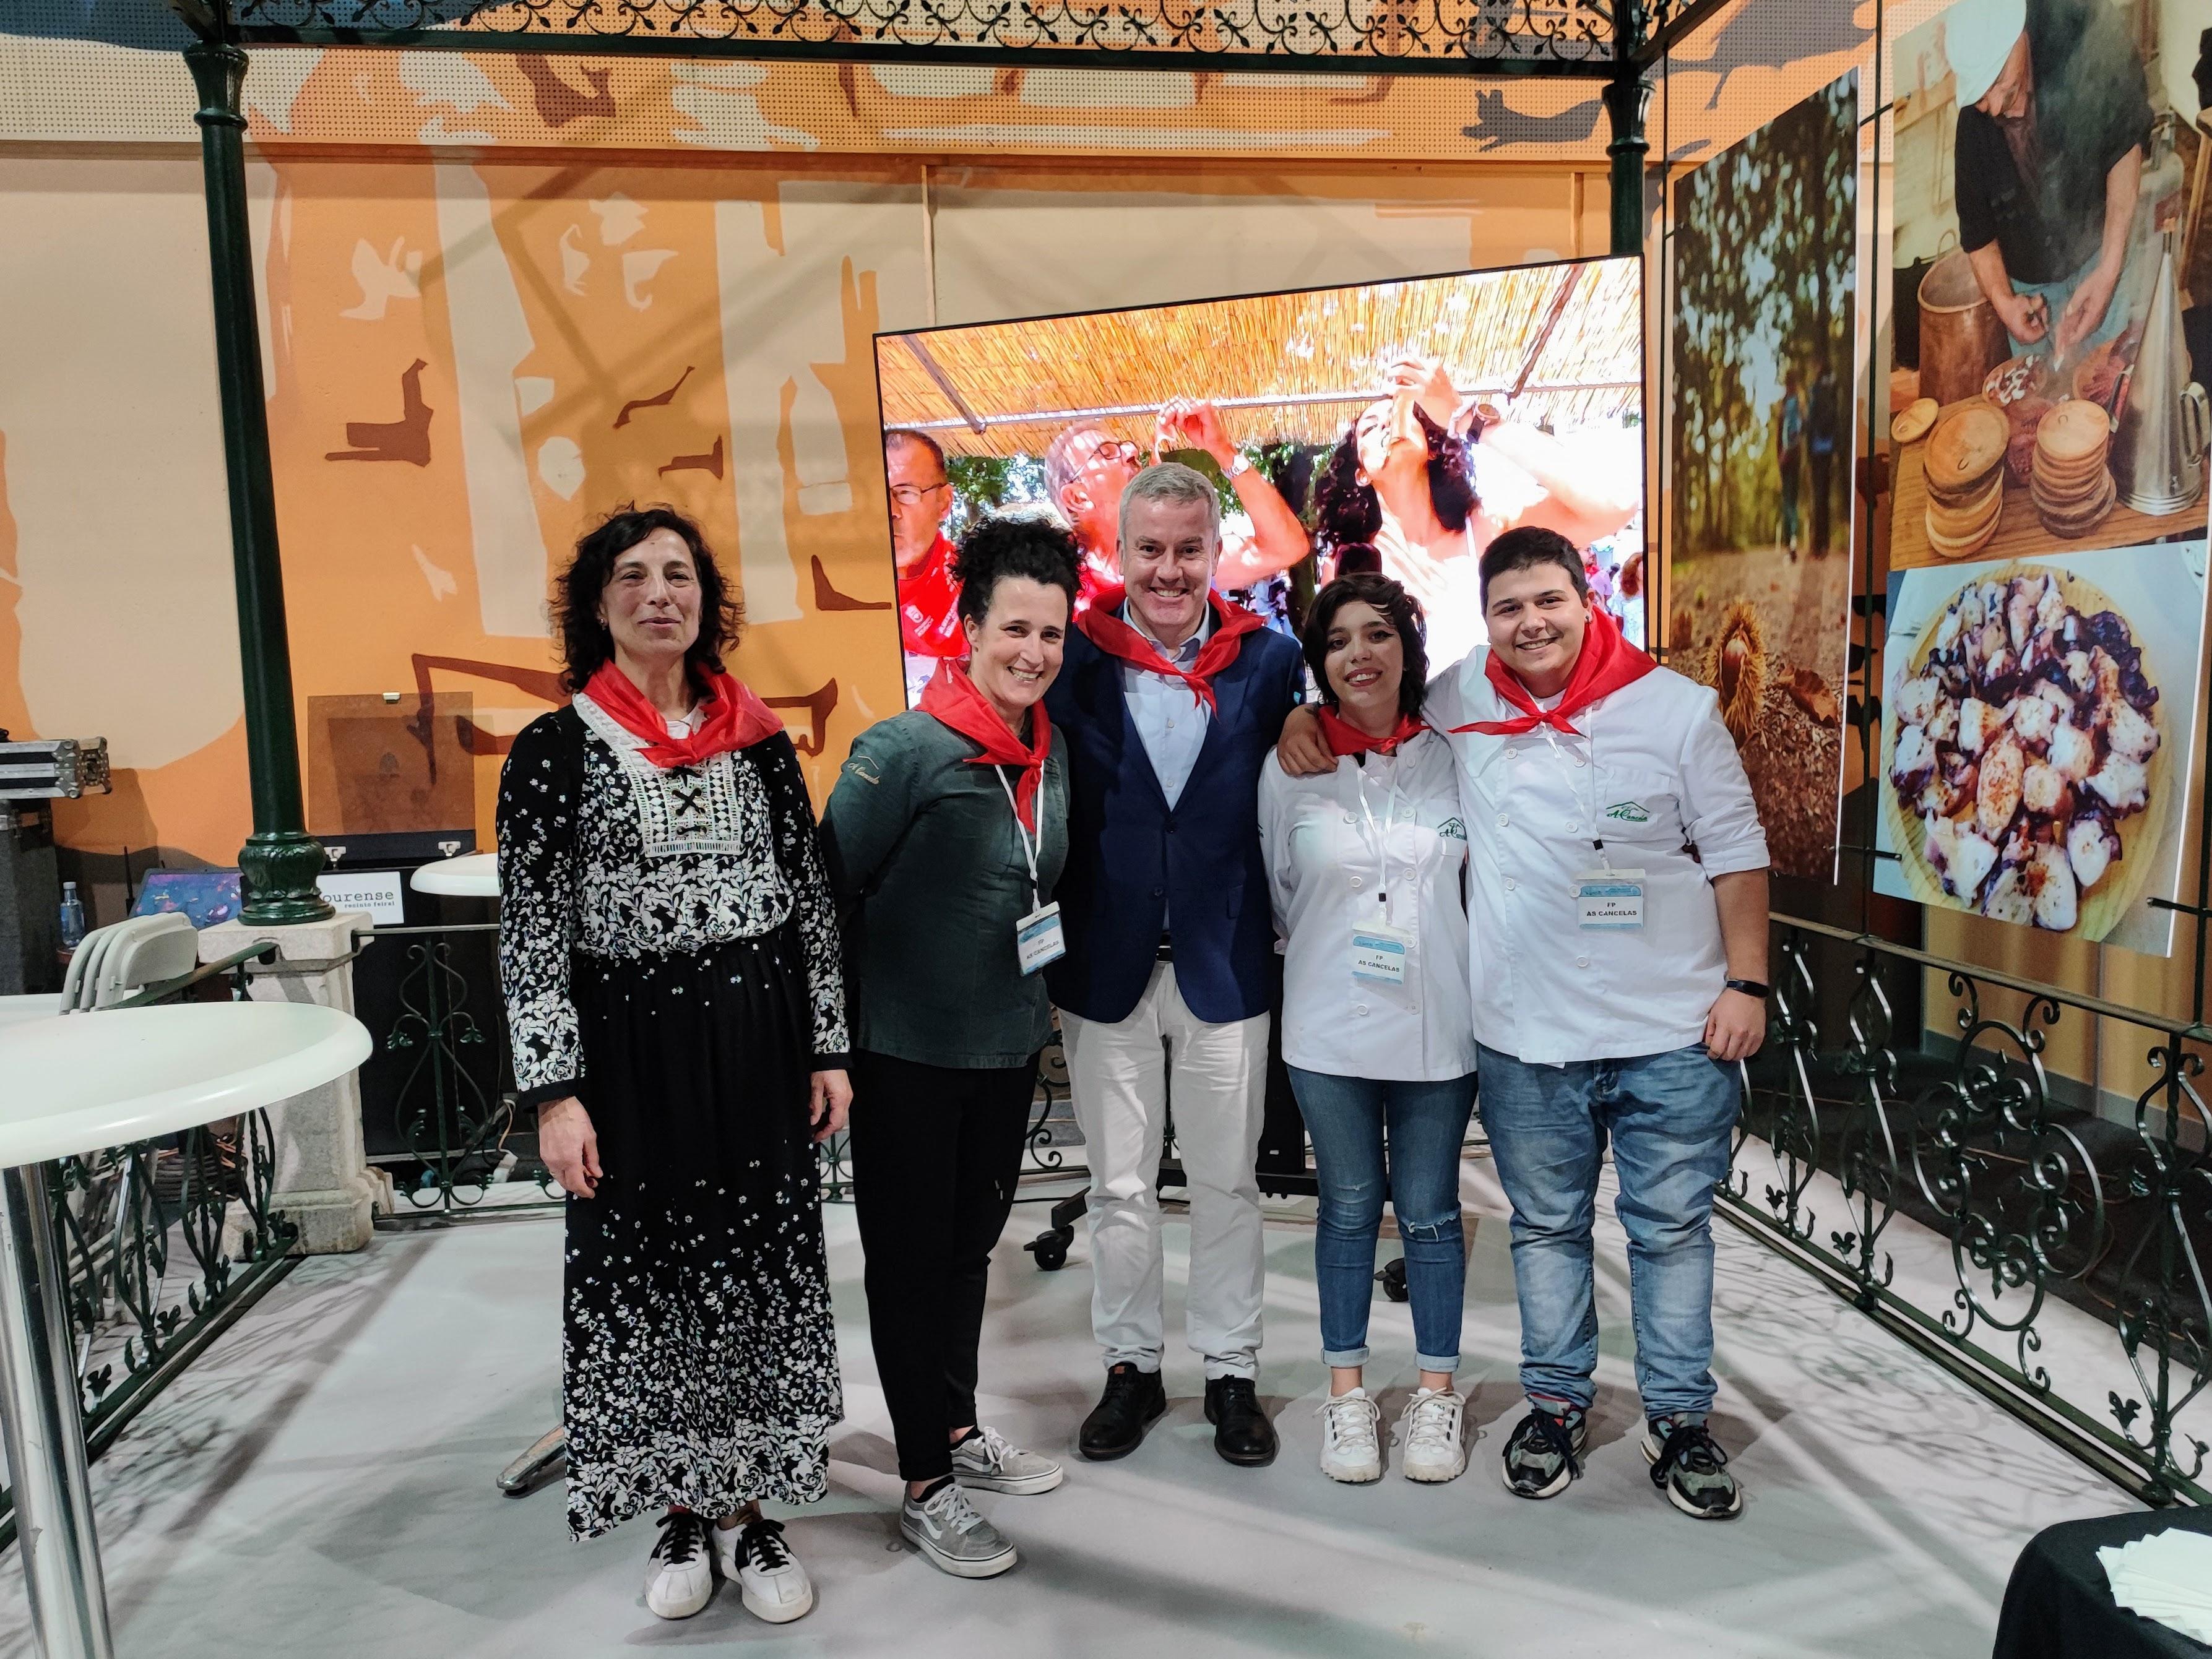 A Cañiza e a súa gastronomía estiveron presentes en Ourense este fin de semana no 23º Salón Internacional de Turismo Gastronómico «XANTAR»